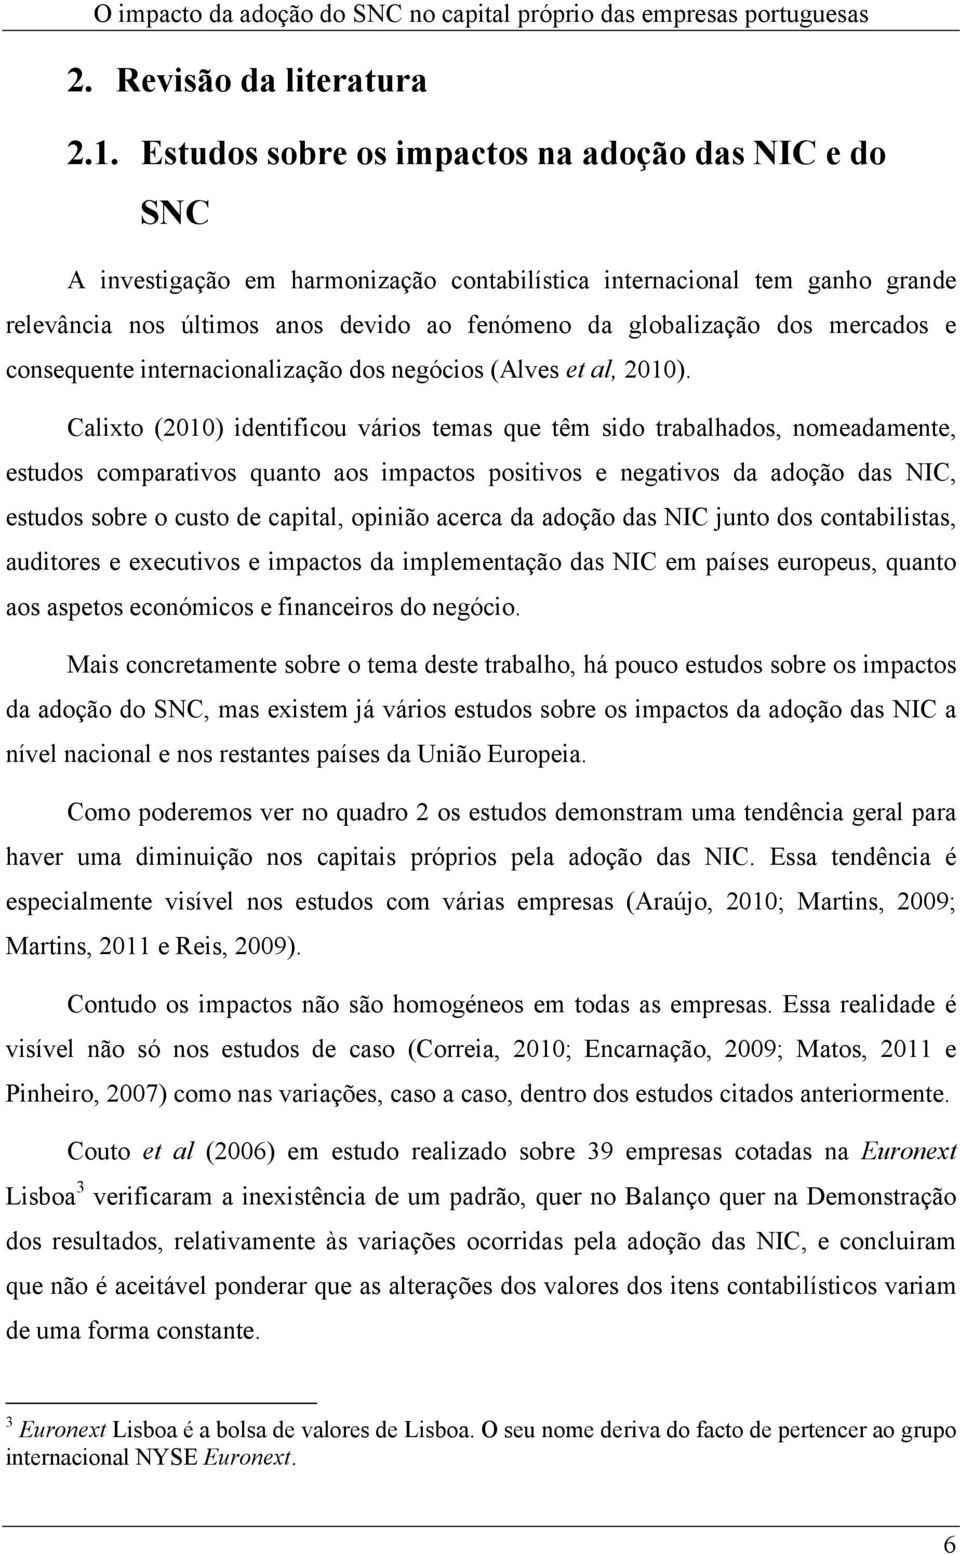 mercados e consequente internacionalização dos negócios (Alves et al, 2010).